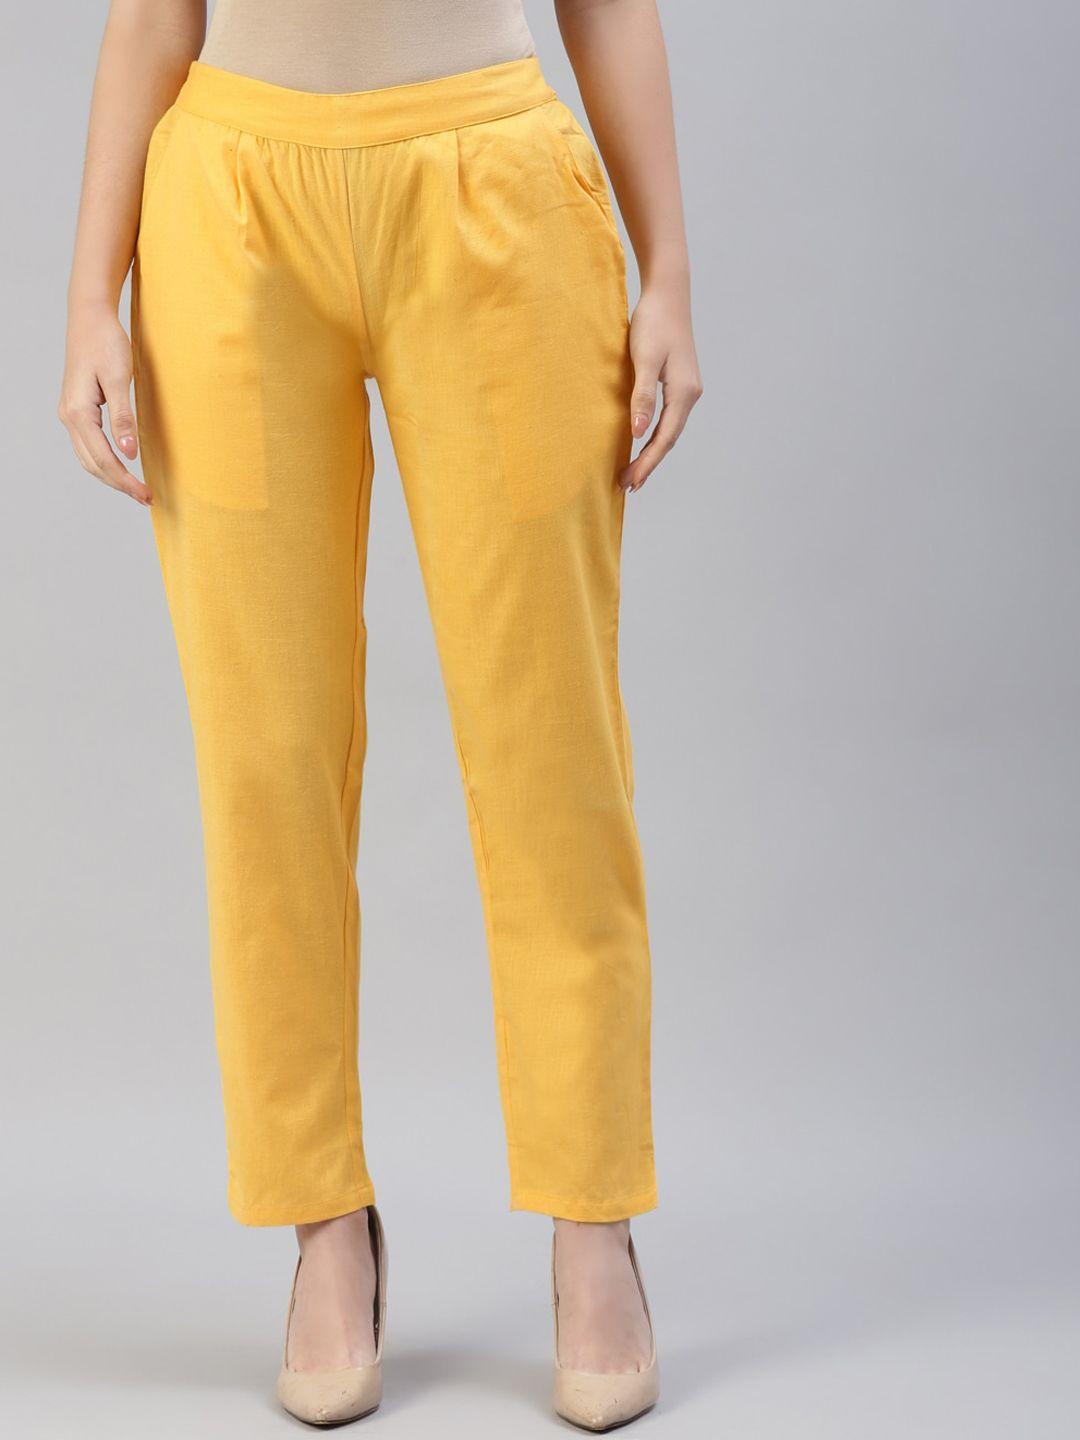 iridaa jaipur women yellow trousers